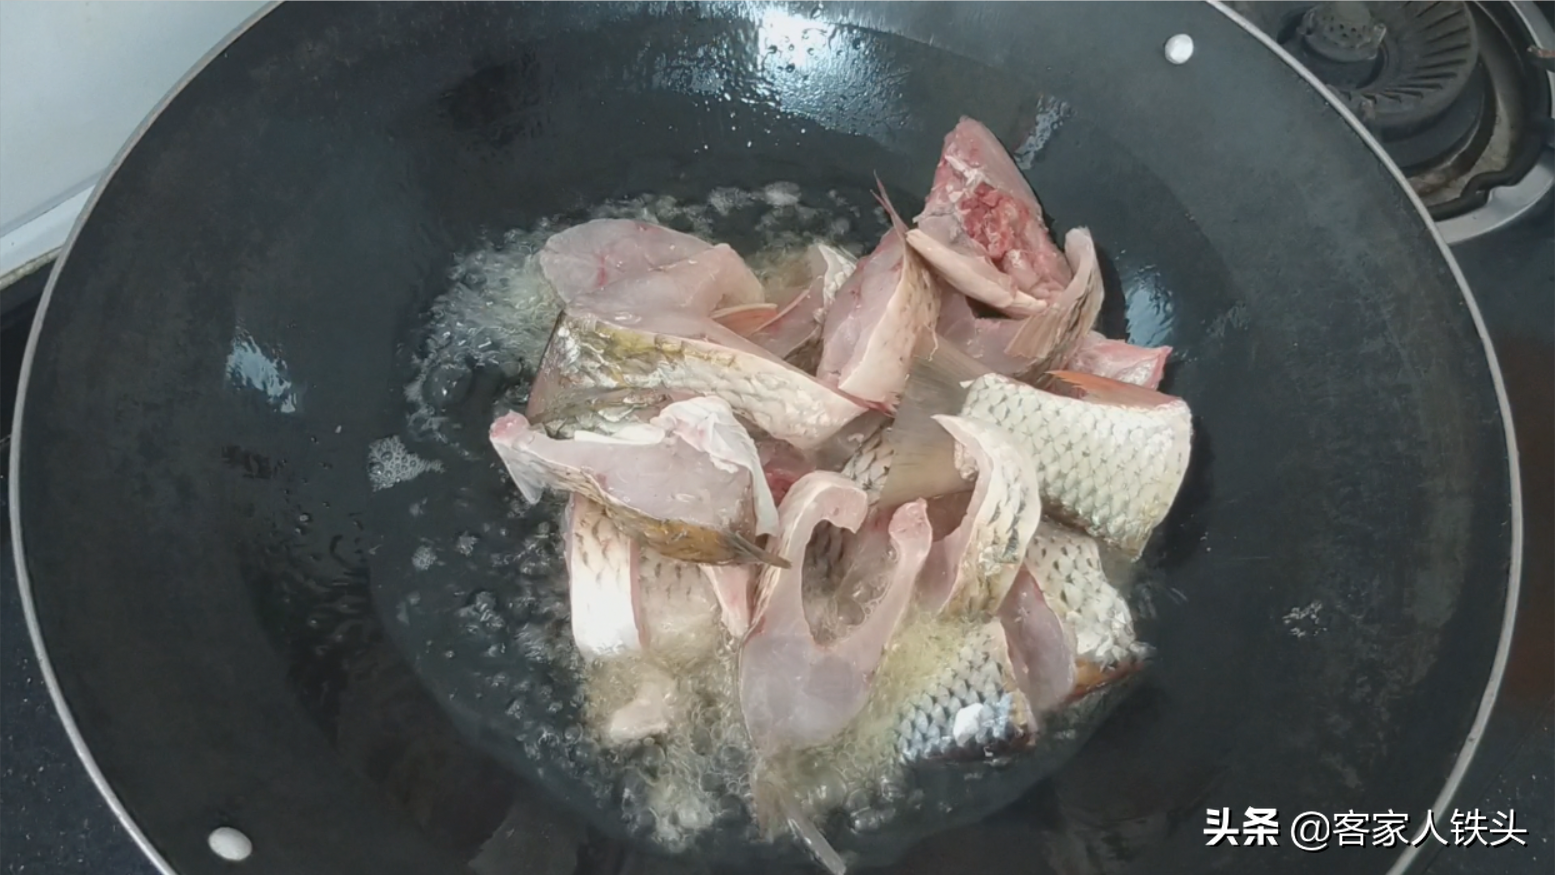 爱吃罐头鱼的收藏喽，教你详细做法步骤，出锅真香，比买的还好吃